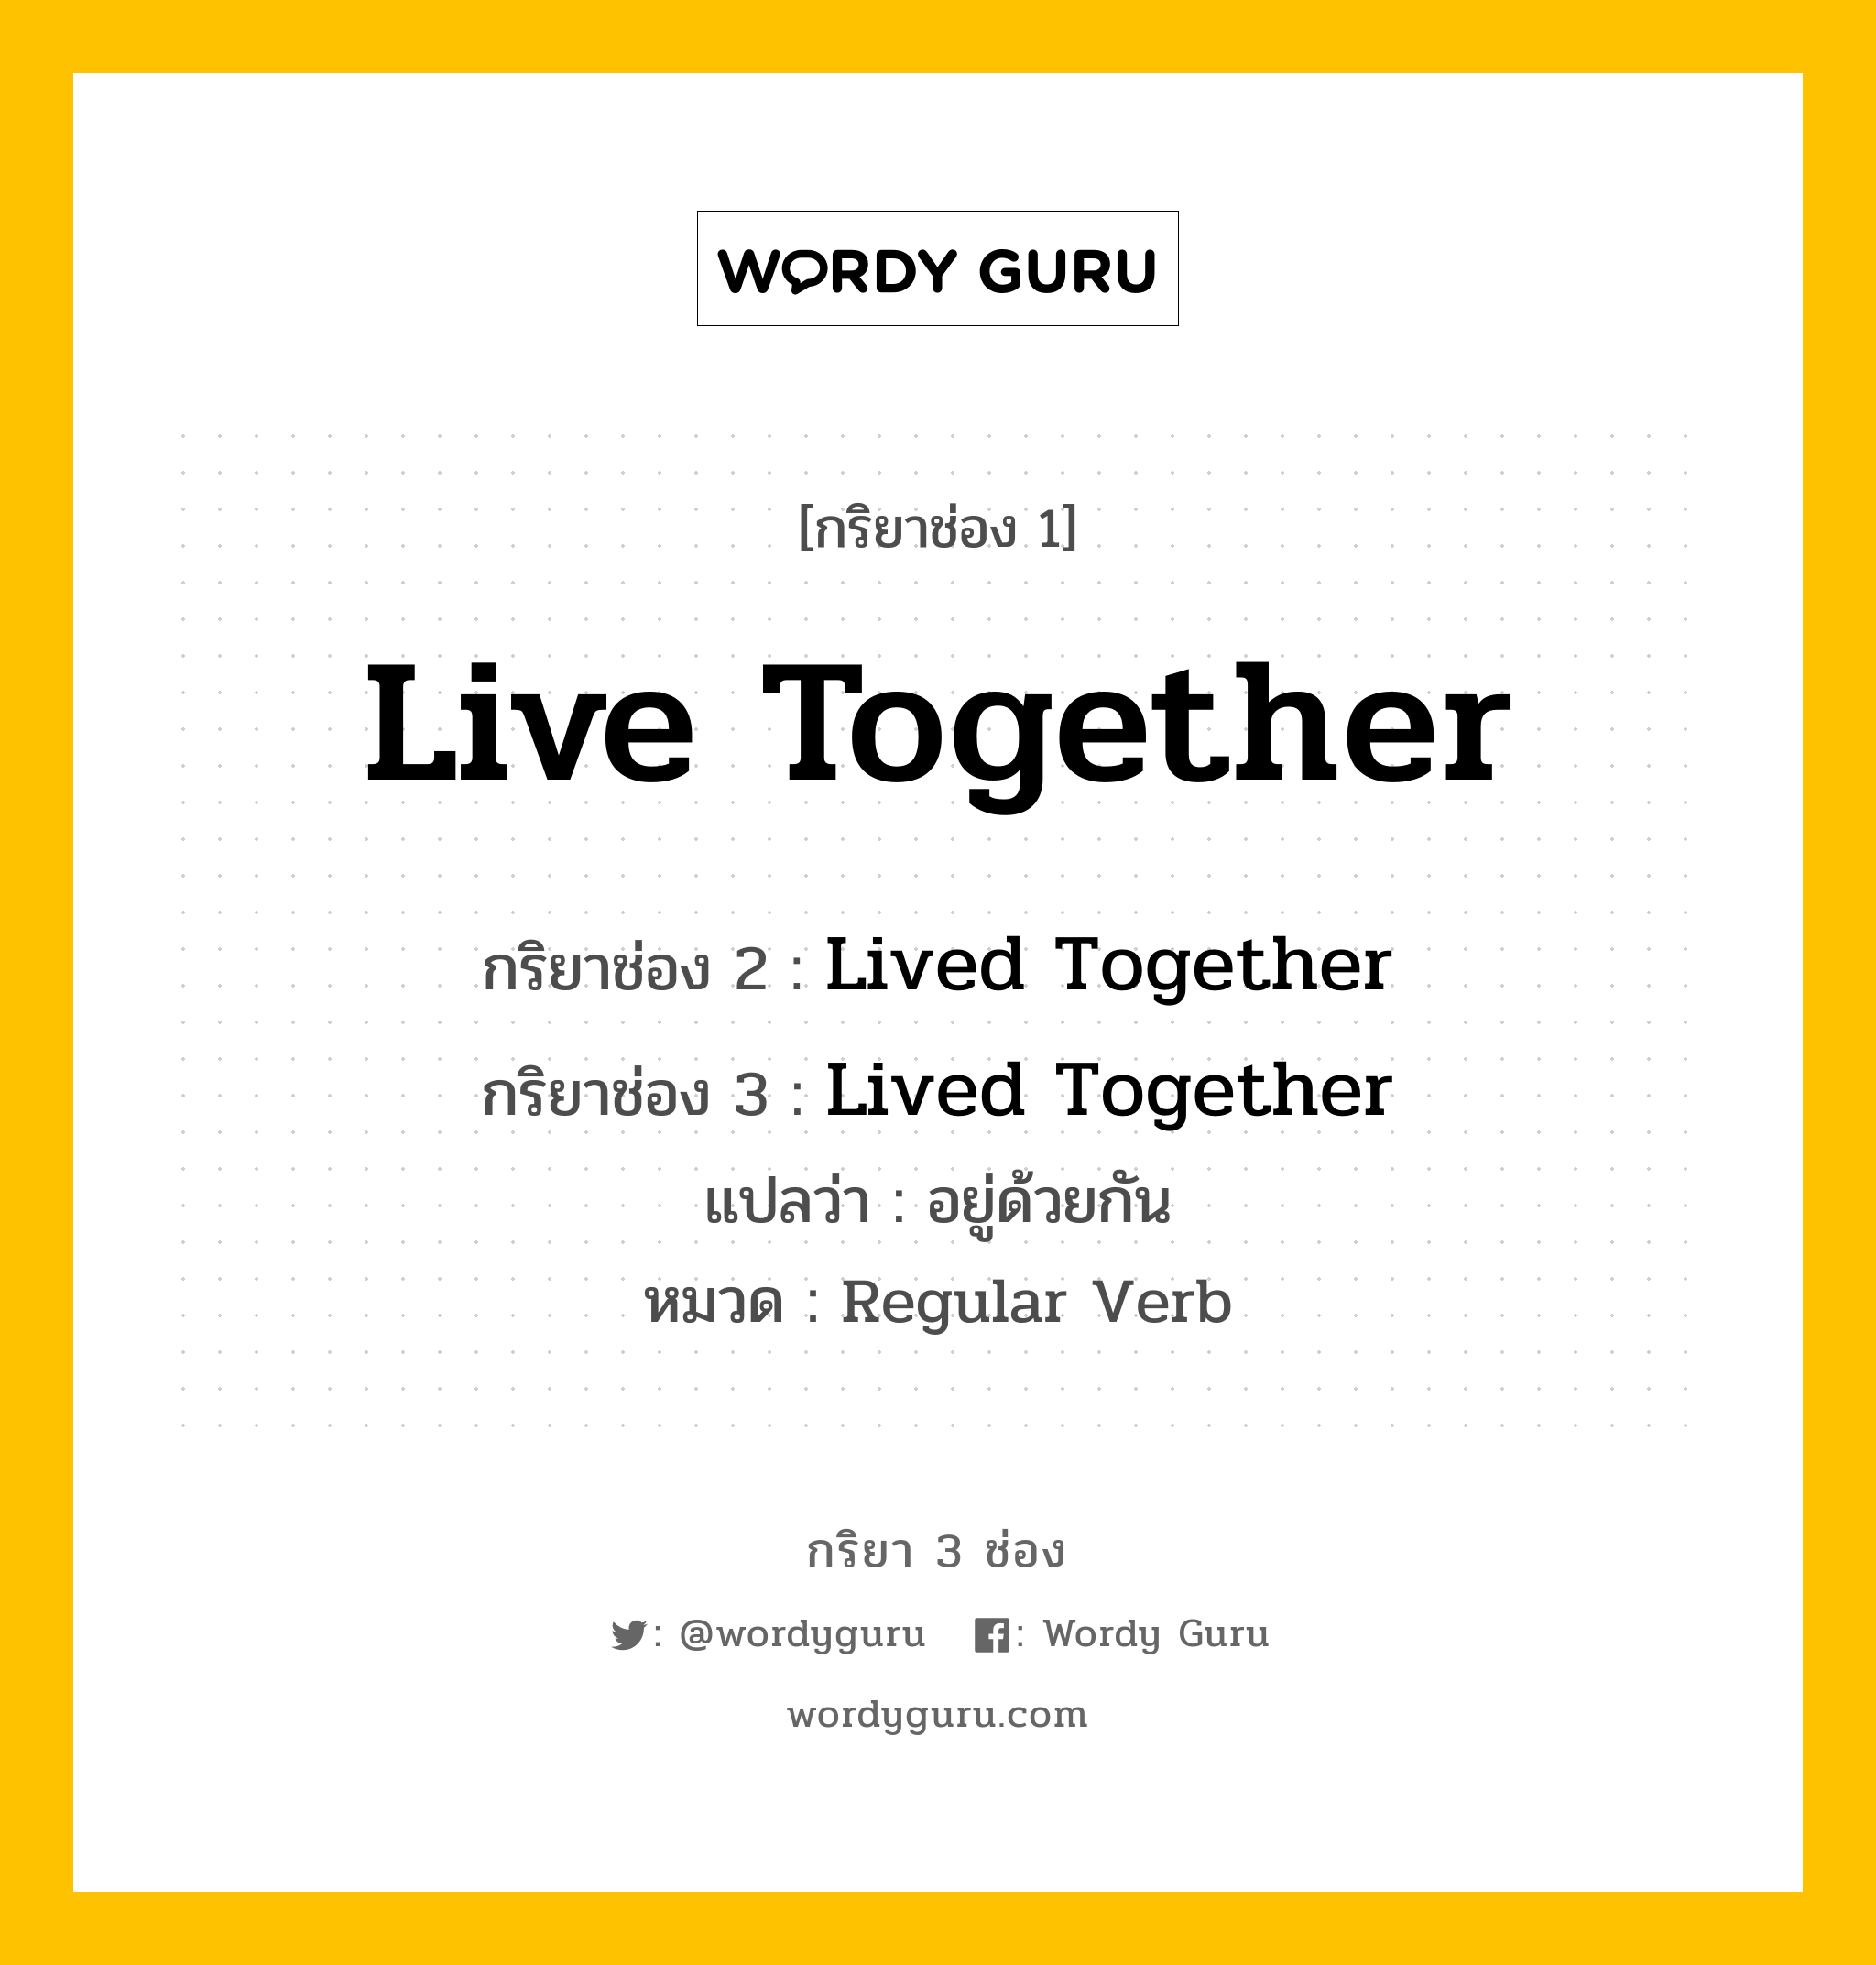 กริยา 3 ช่อง ของ Live Together คืออะไร? มาดูคำอ่าน คำแปลกันเลย, กริยาช่อง 1 Live Together กริยาช่อง 2 Lived Together กริยาช่อง 3 Lived Together แปลว่า อยู่ด้วยกัน หมวด Regular Verb หมวด Regular Verb